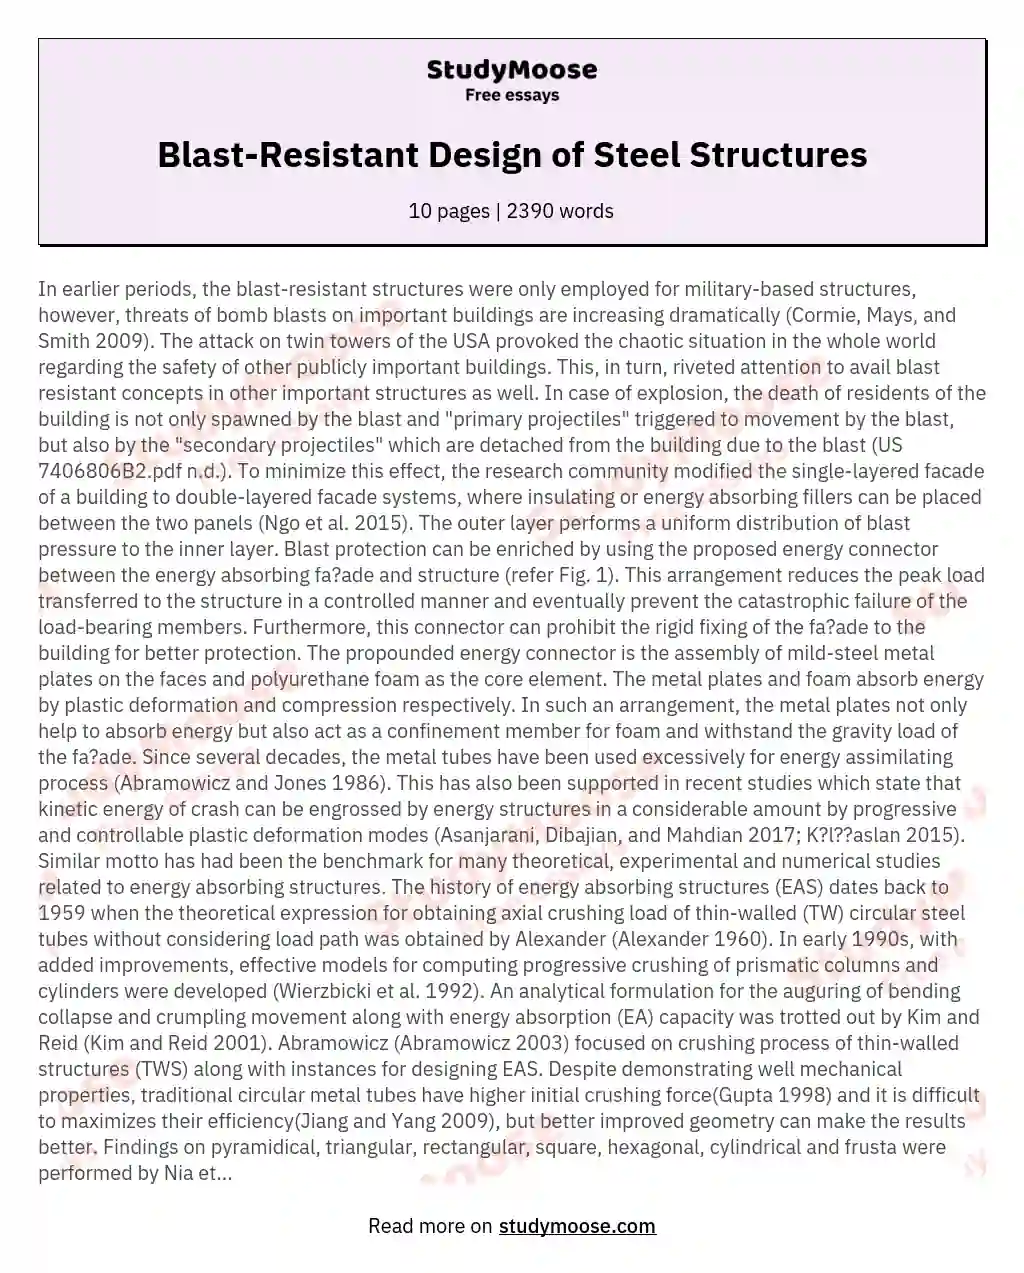 Blast-Resistant Design of Steel Structures essay